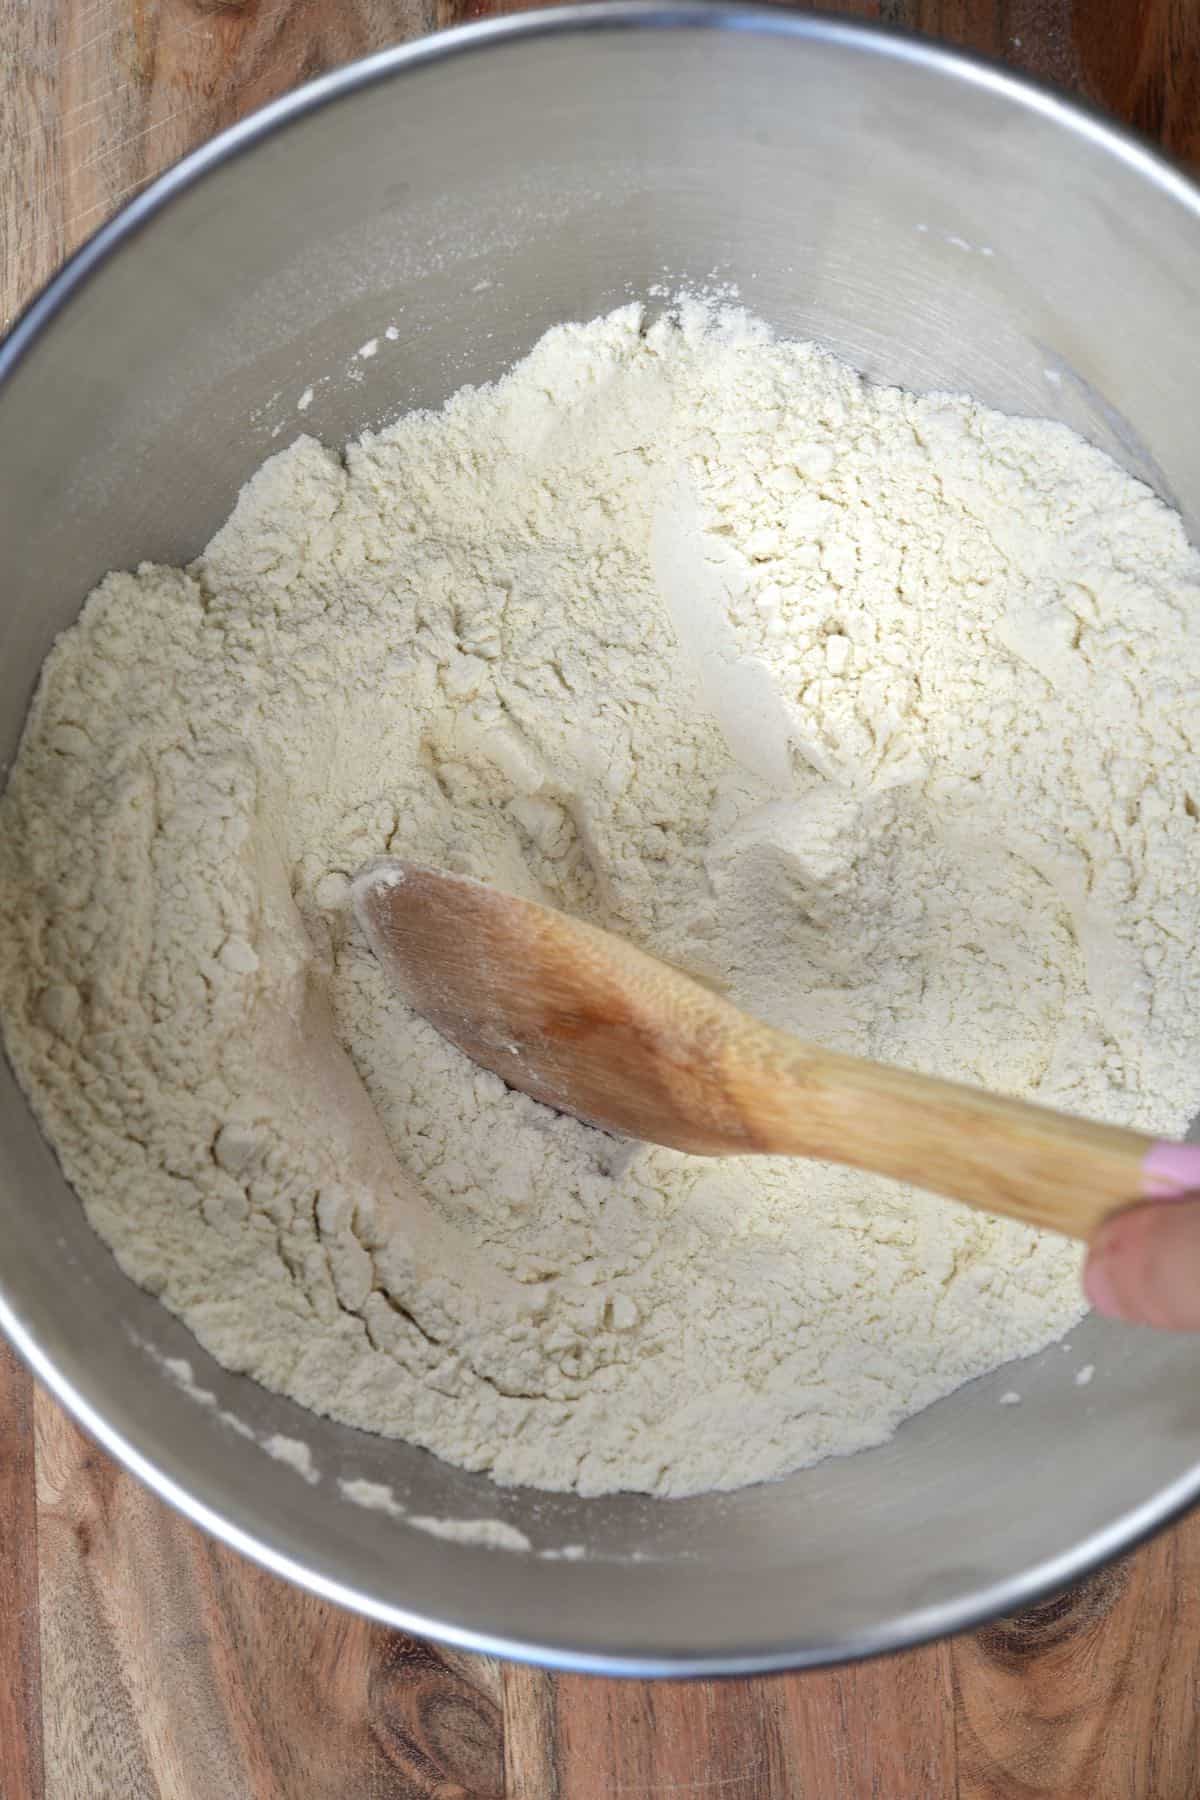 Mixing flour with salt